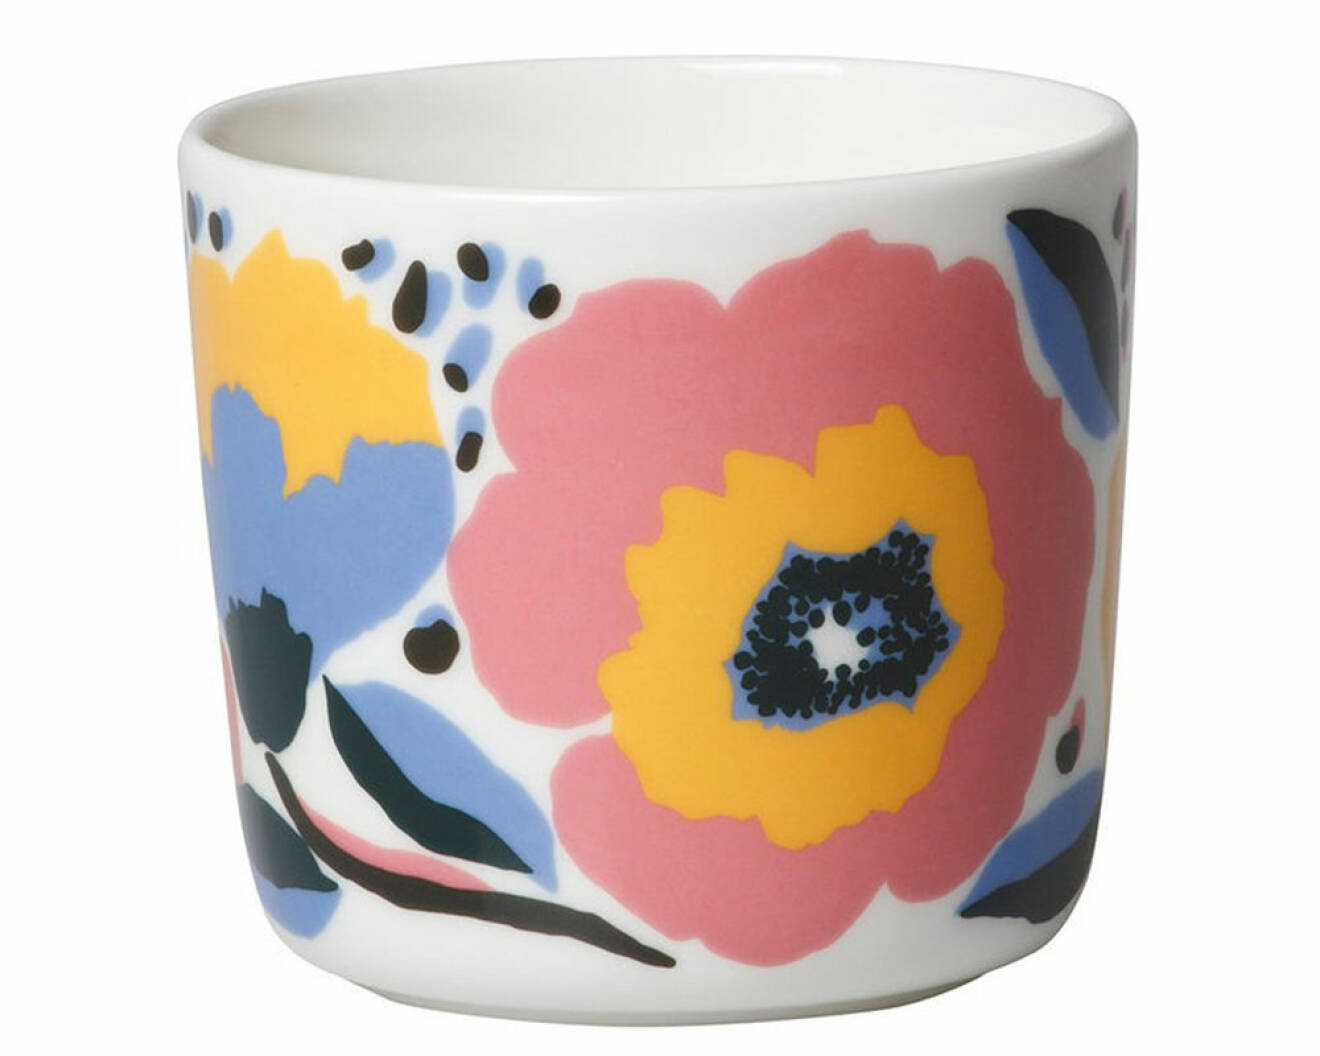 Kaffemugg från Marimekko med mönstret Rosarium